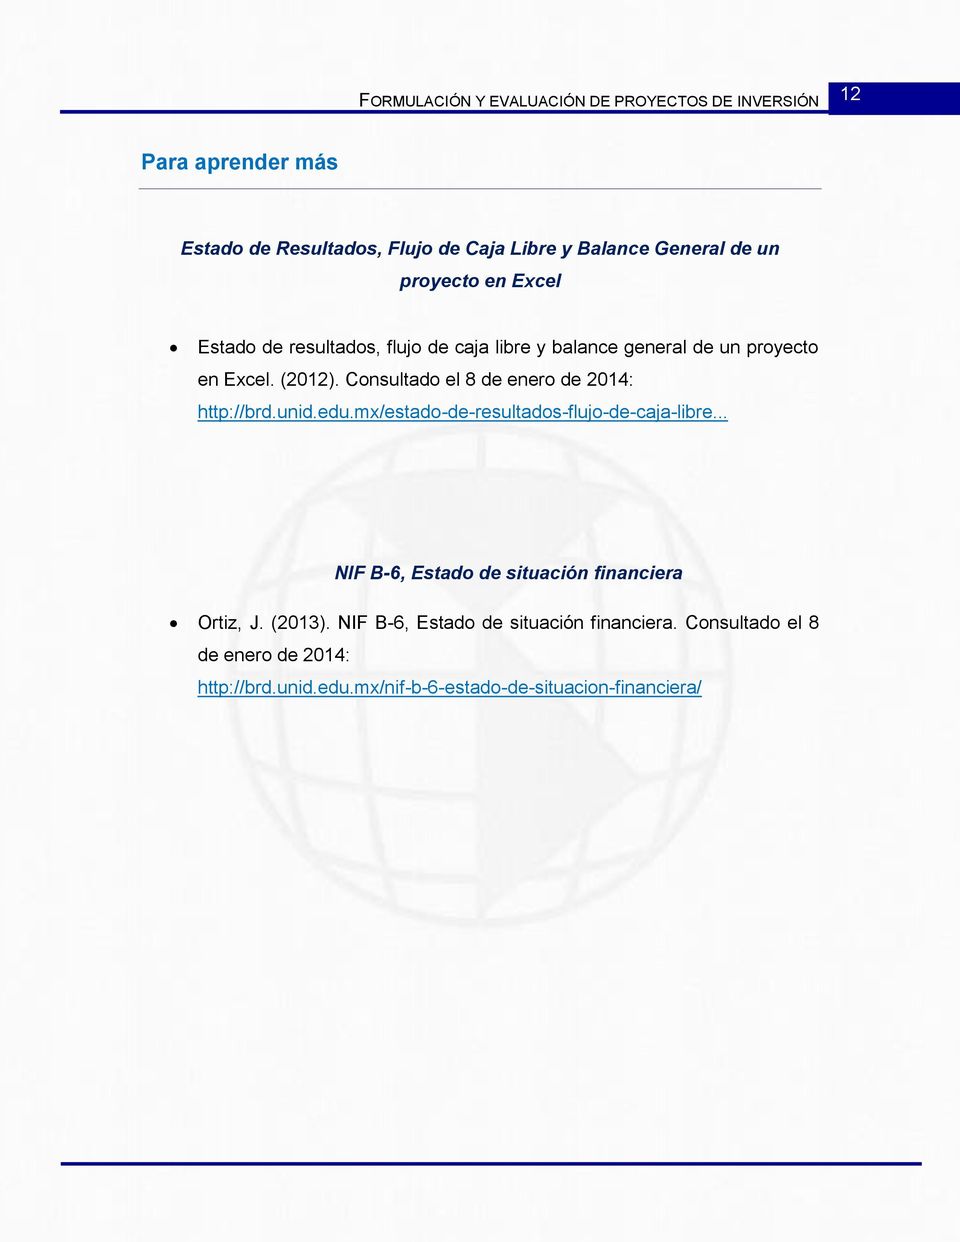 Consultado el 8 de enero de 2014: http://brd.unid.edu.mx/estado-de-resultados-flujo-de-caja-libre.